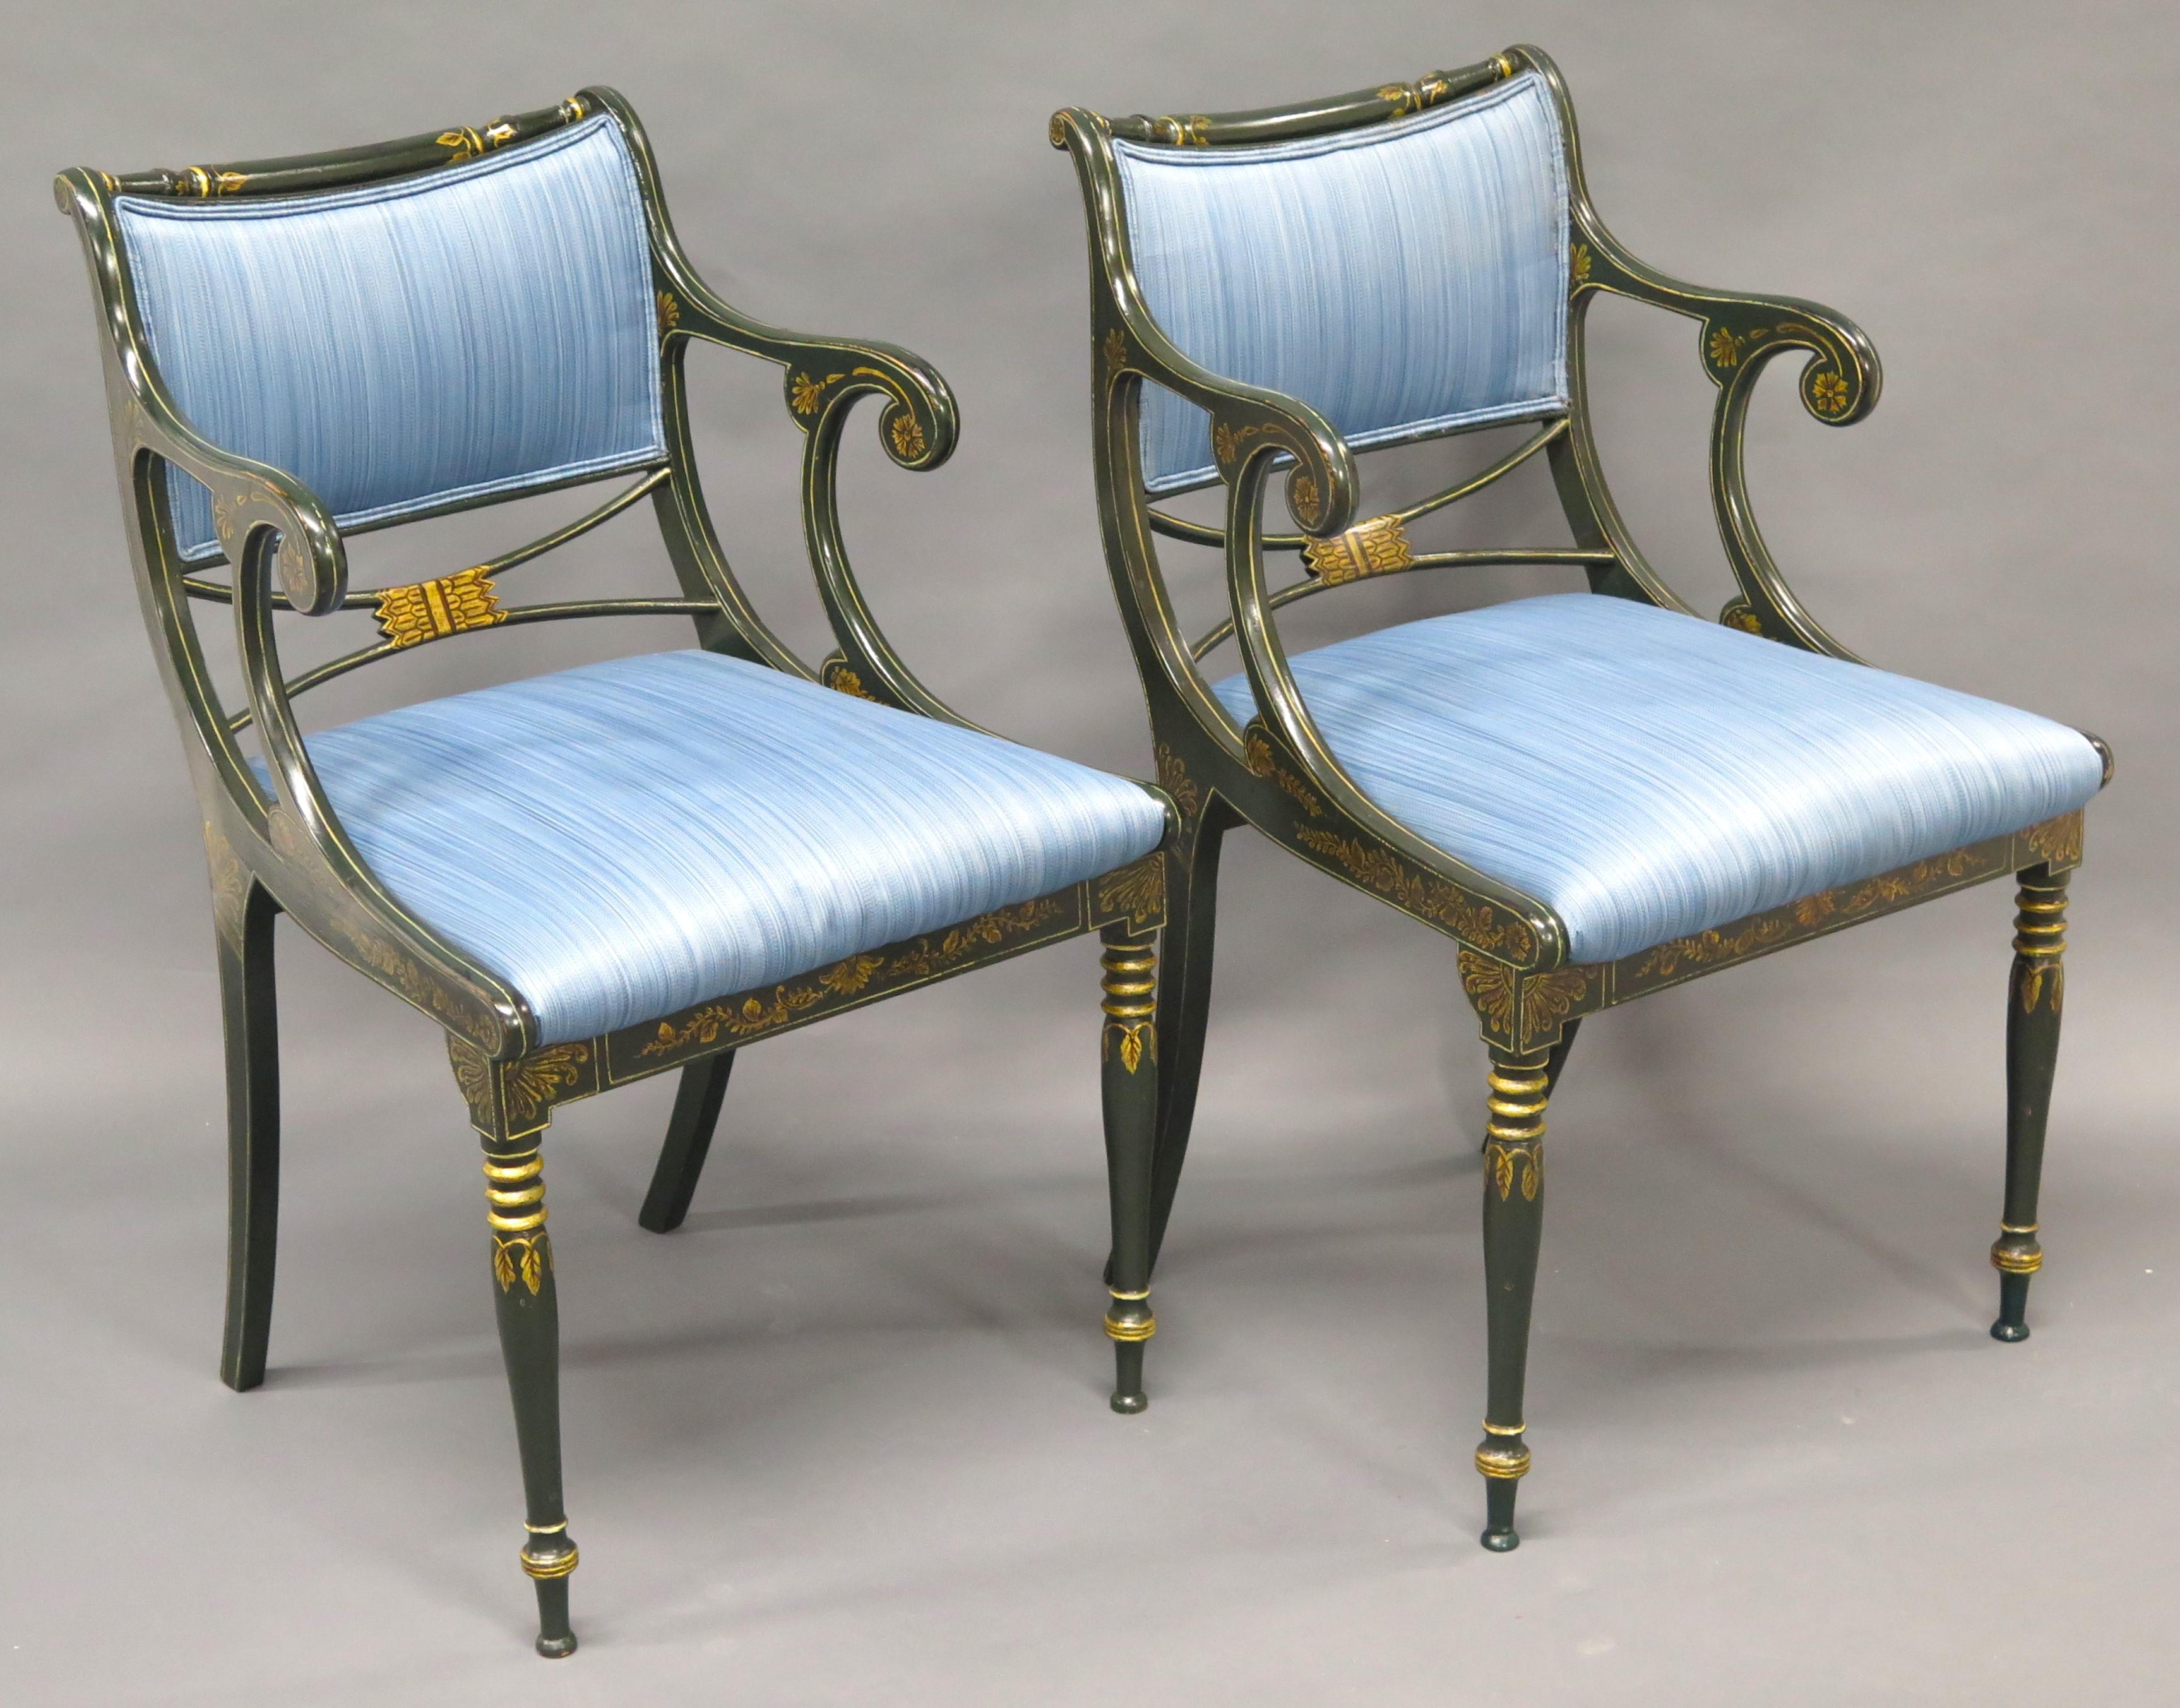 Englische Sessel im Regency-Stil, gepolstert mit blau gestreiftem Seidensamt, jeder Sessel mit vergoldeter Schablonendekoration über dunkelgrüner (fast schwarzer) Farbe. England. Mitte des 20. Jahrhunderts